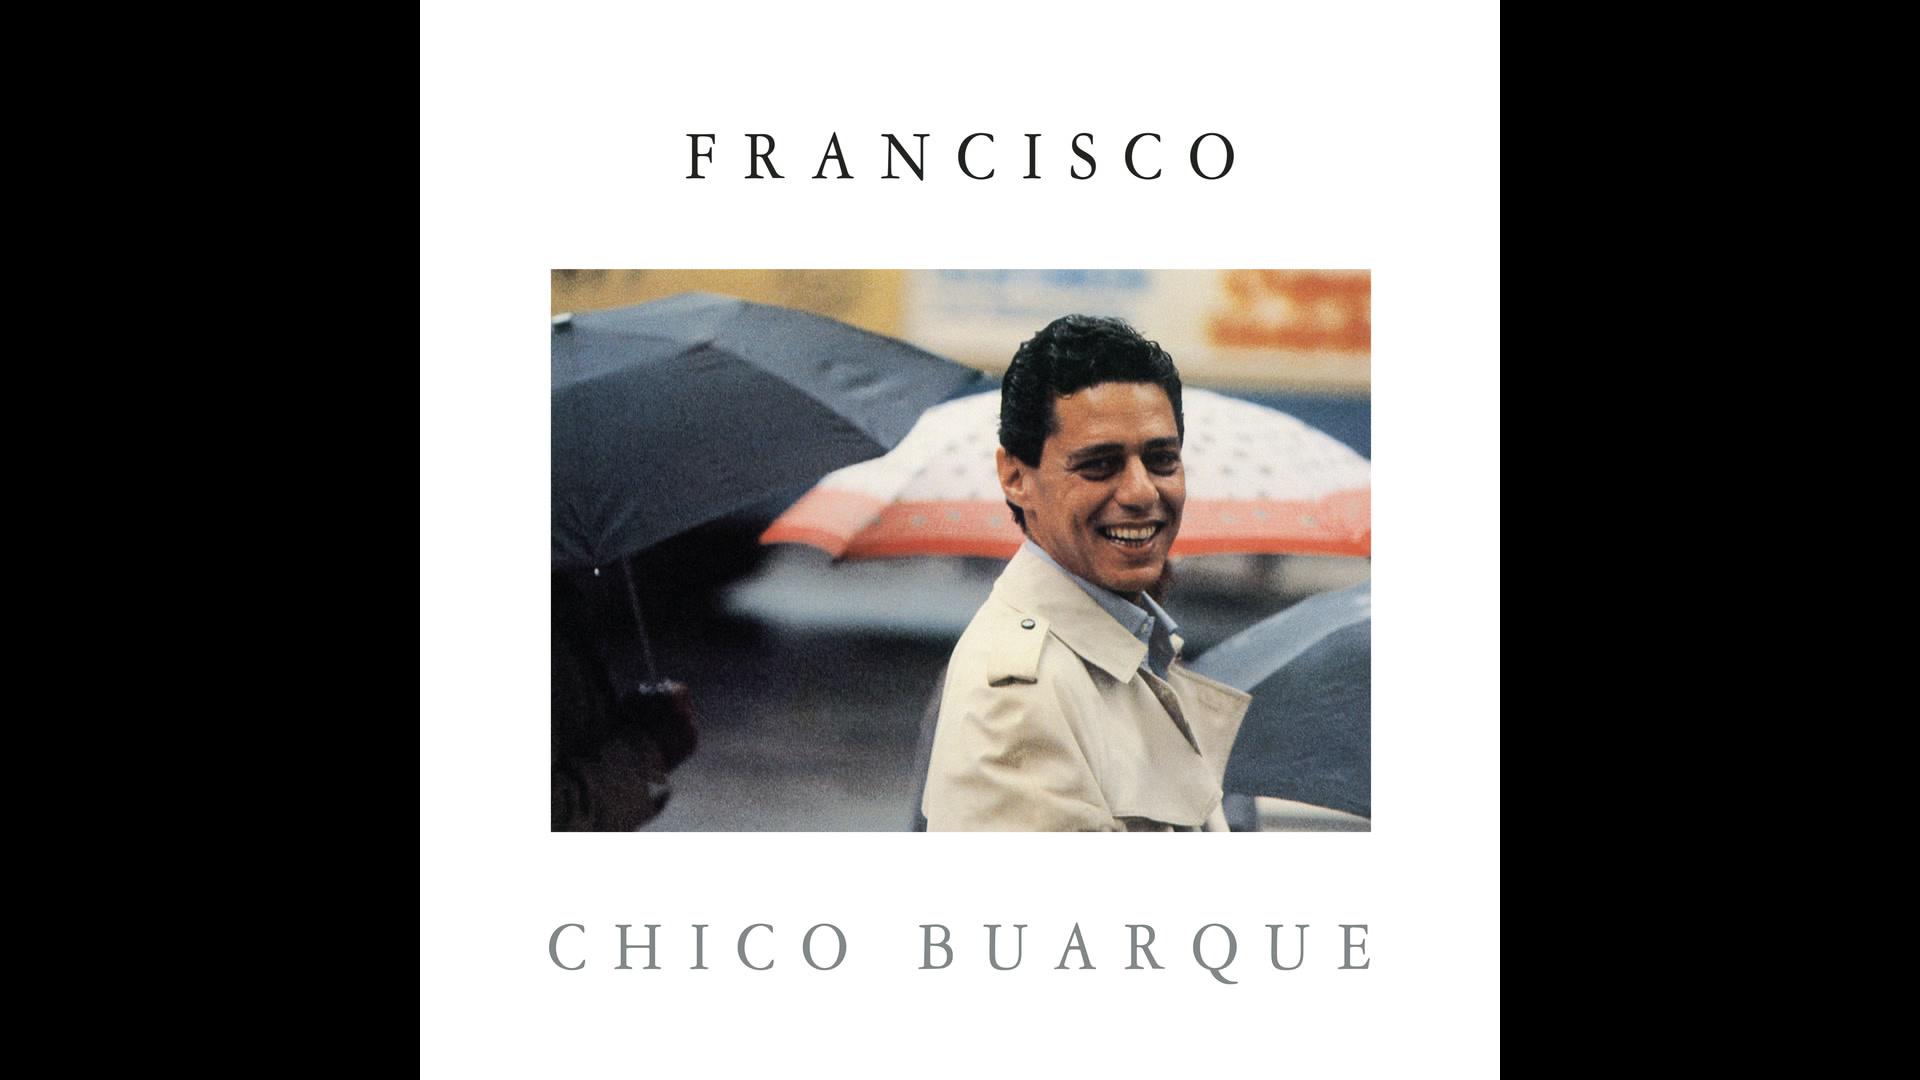 Chico Buarque - Cantando no Toró (Pseudo Video)